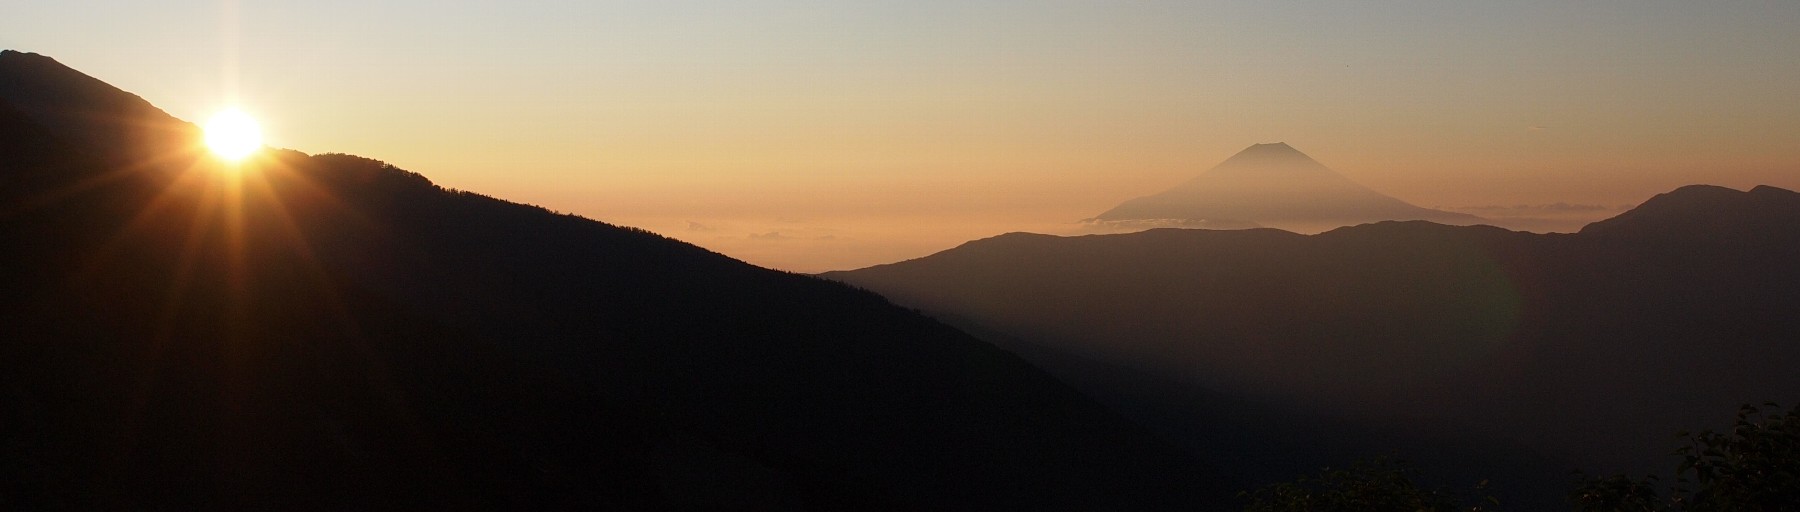 荒川小屋からの朝日と富士山